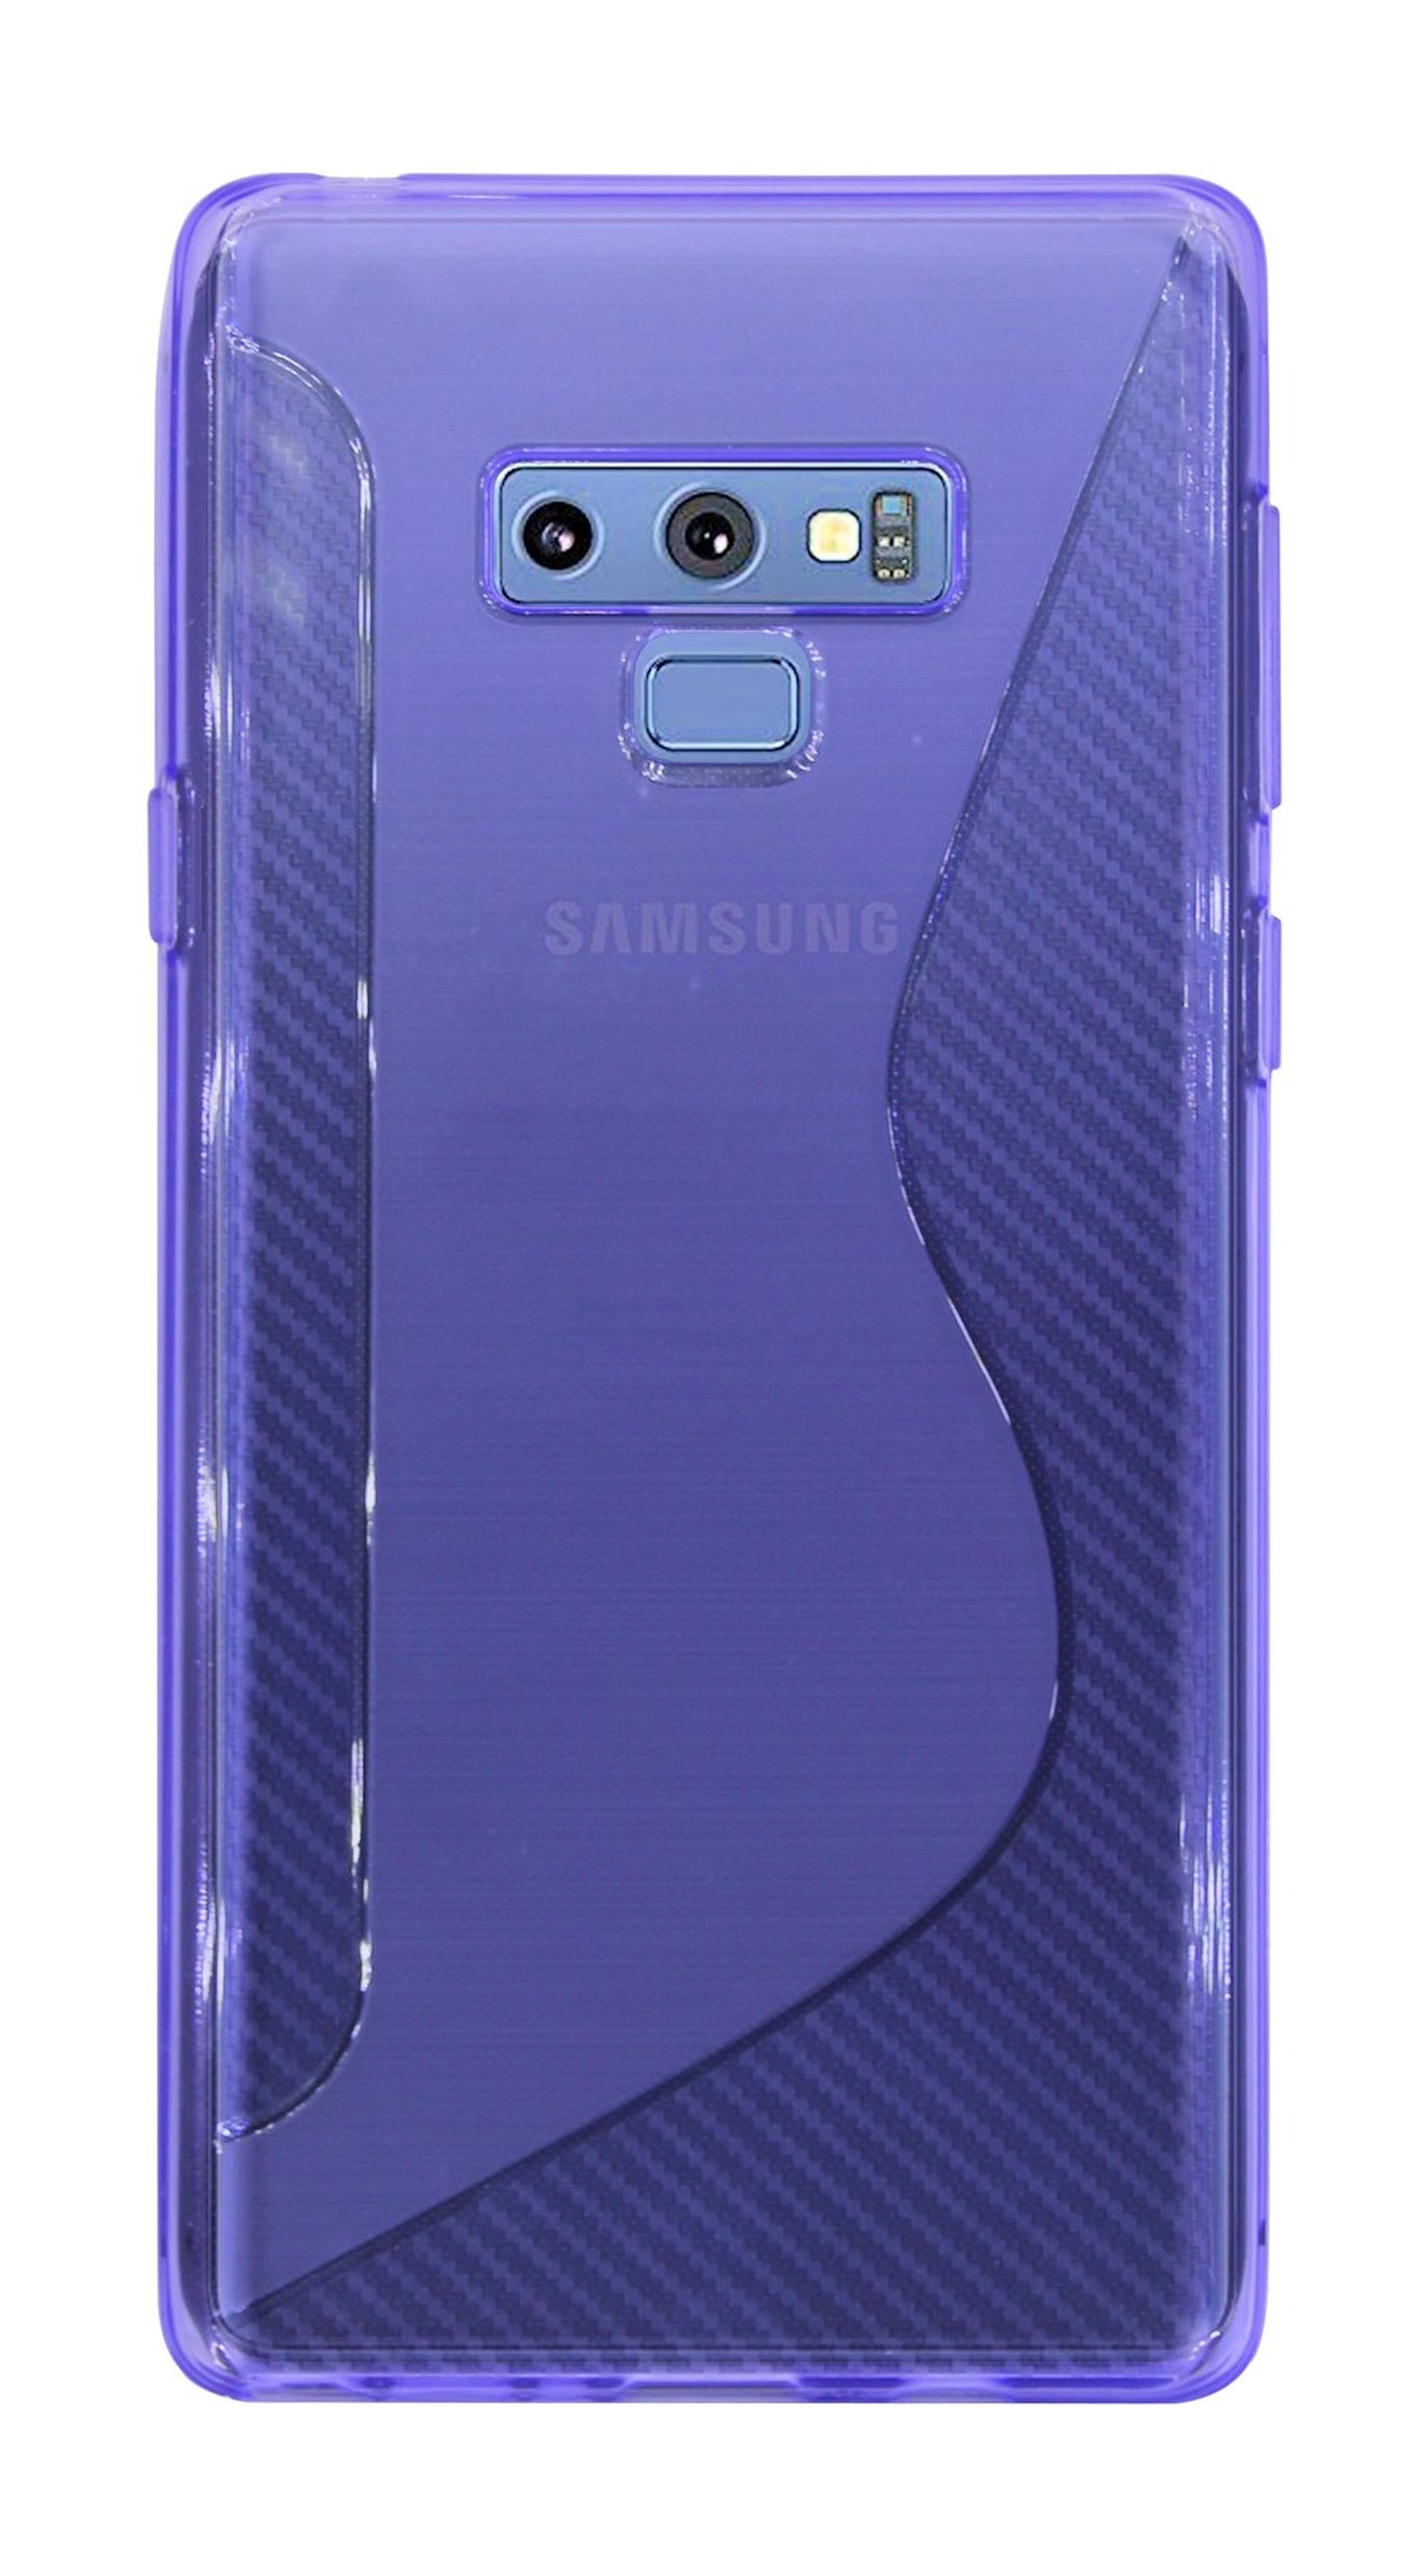 COFI Violett S-Line 9, Note Cover, Galaxy Bumper, Samsung,